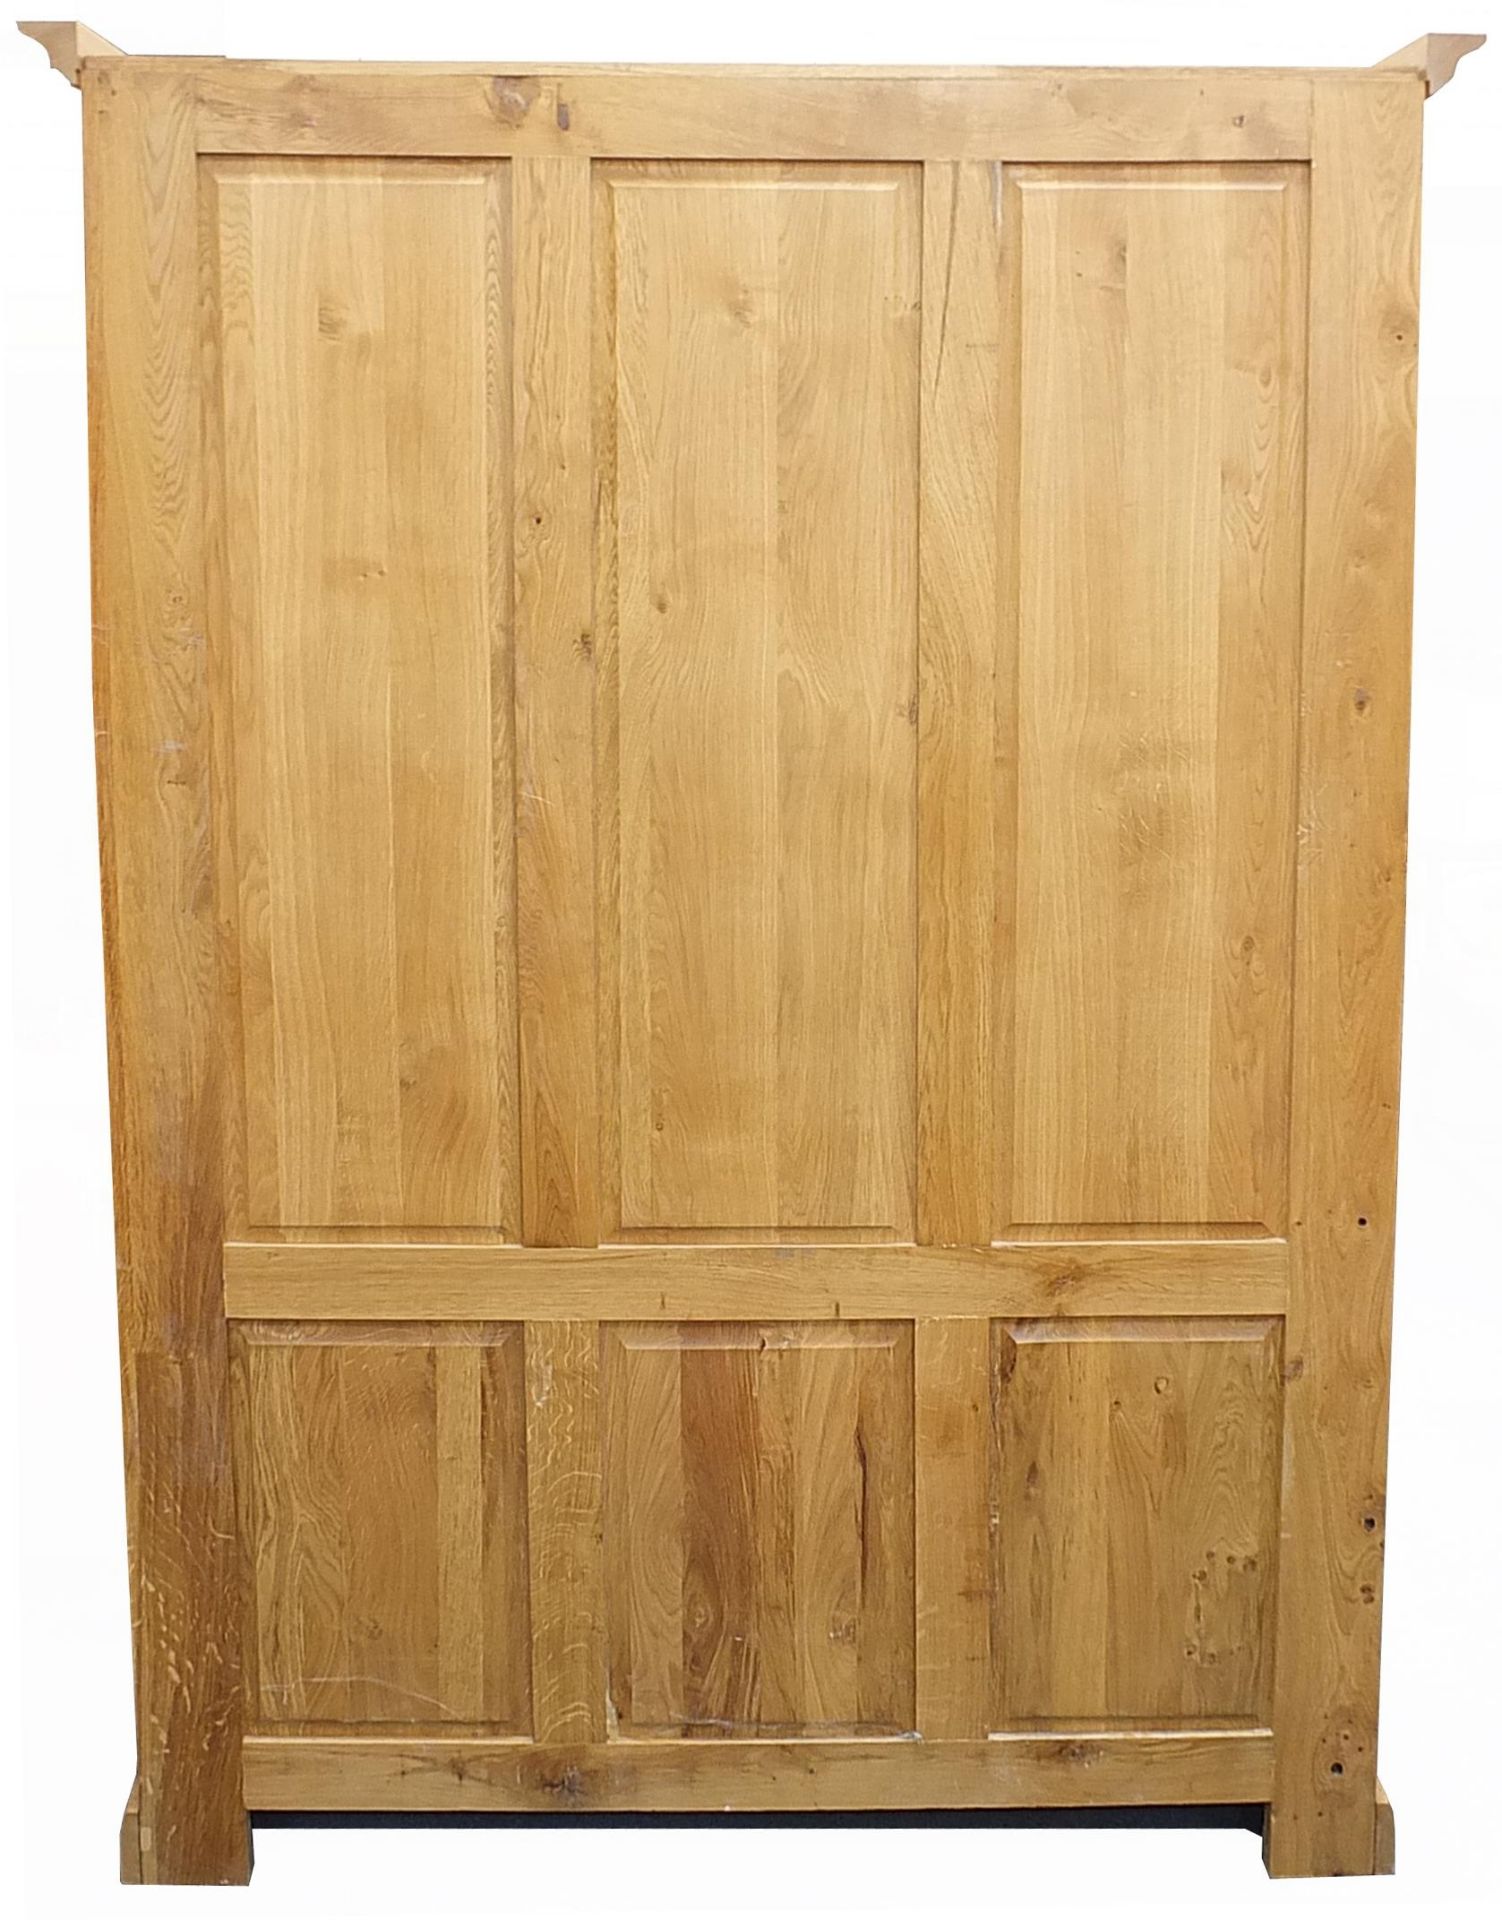 Large contemporary light oak bookcase, 200cm H x 150cm W x 62cm D - Image 3 of 3